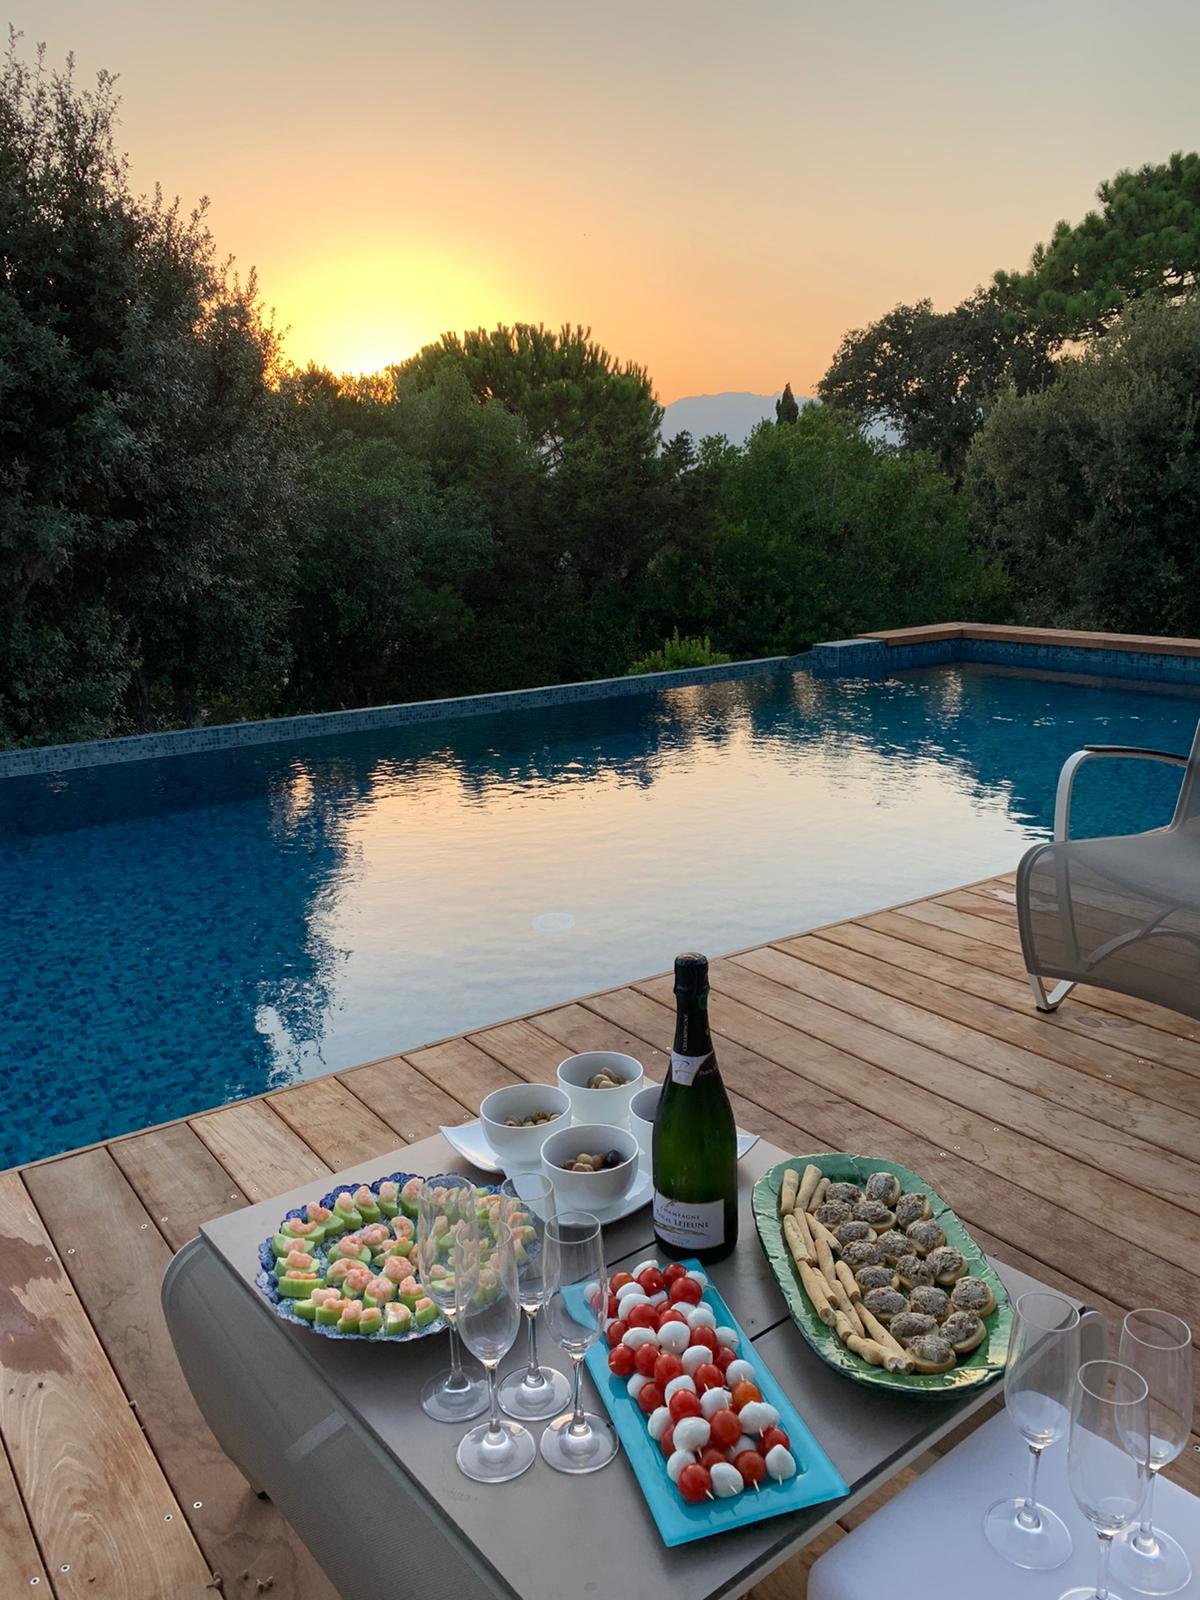 Location Villa Marlis avec piscine Domaine de cala Rossa Porto Vecchio Corse du sud plage privé à pieds luxe